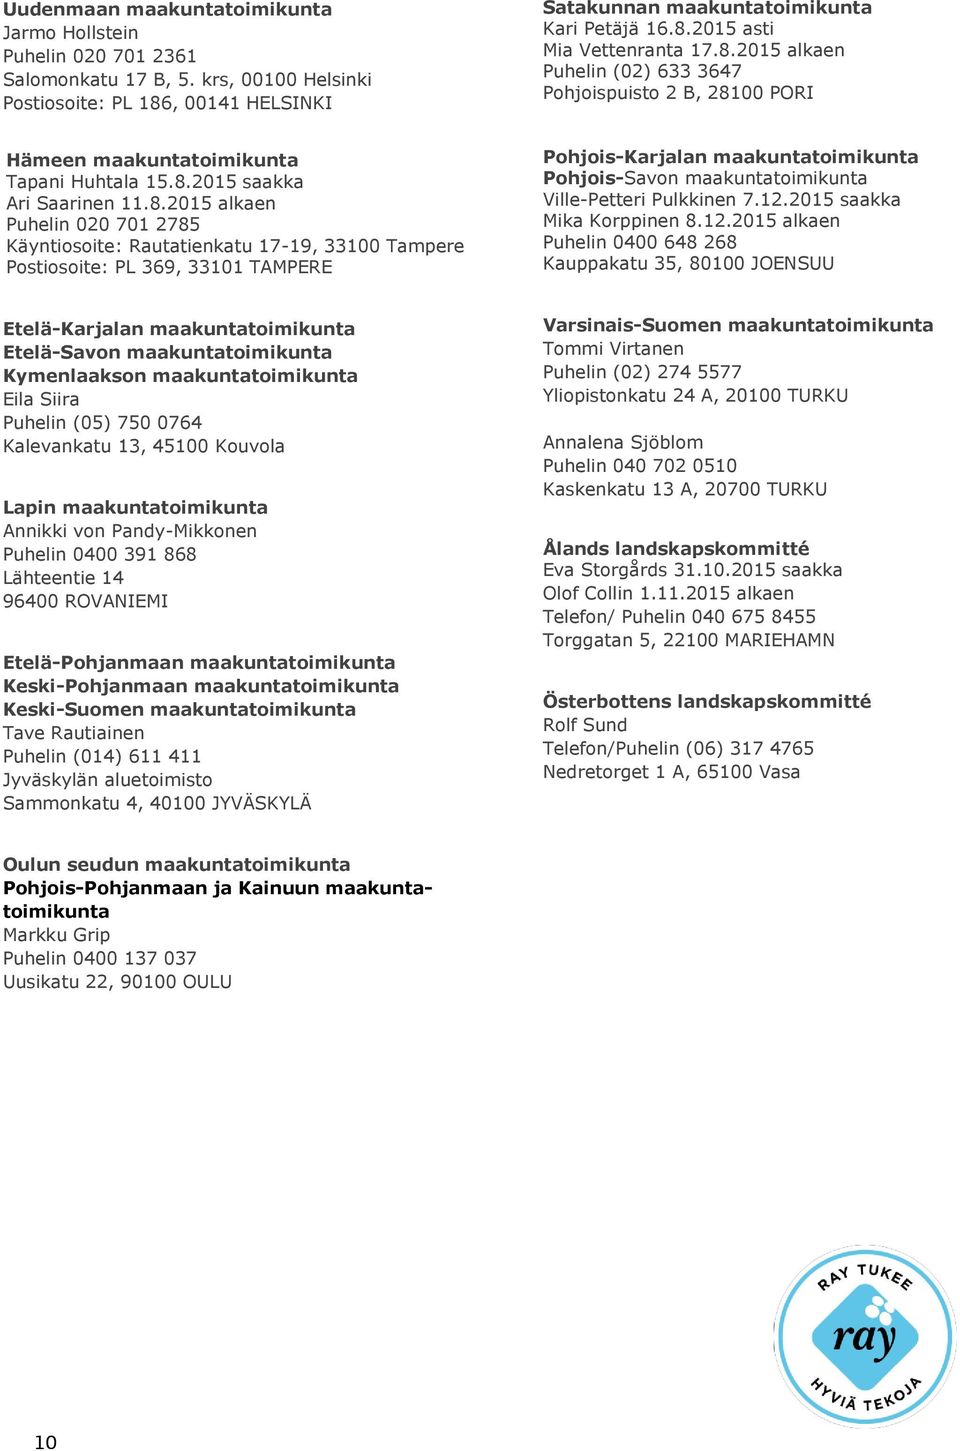 Rautatienkatu 17-19, 33100 Tampere Postiosoite: PL 369, 33101 TAMPERE Pohjois-Karjalan maakuntatoimikunta Pohjois-Savon maakuntatoimikunta Ville-Petteri Pulkkinen 7.12.